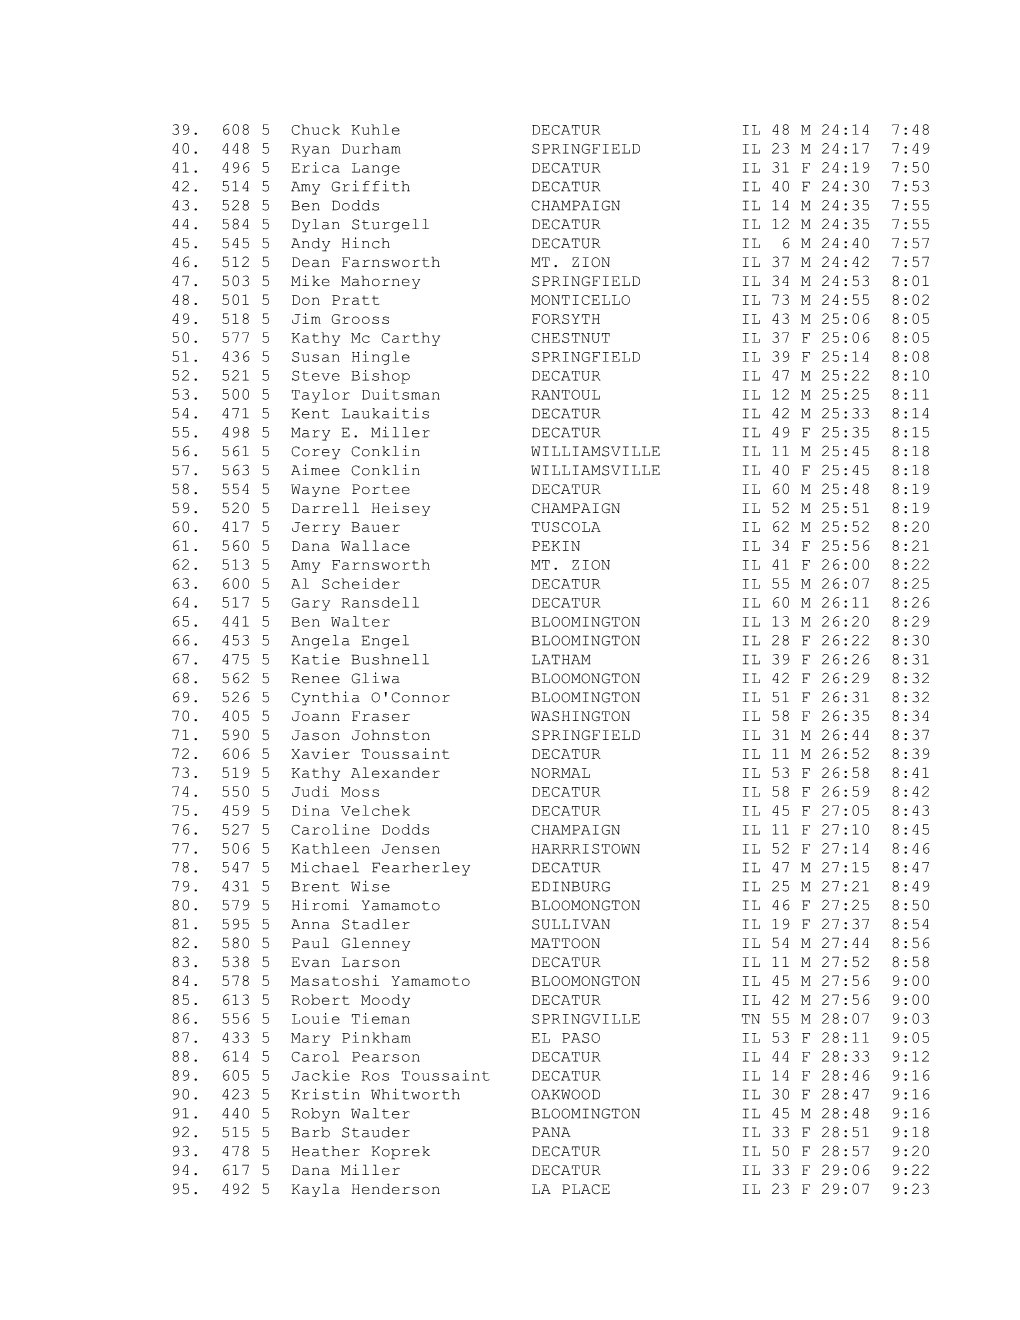 Decatur Shoreline Classic 5K Run Overall Results